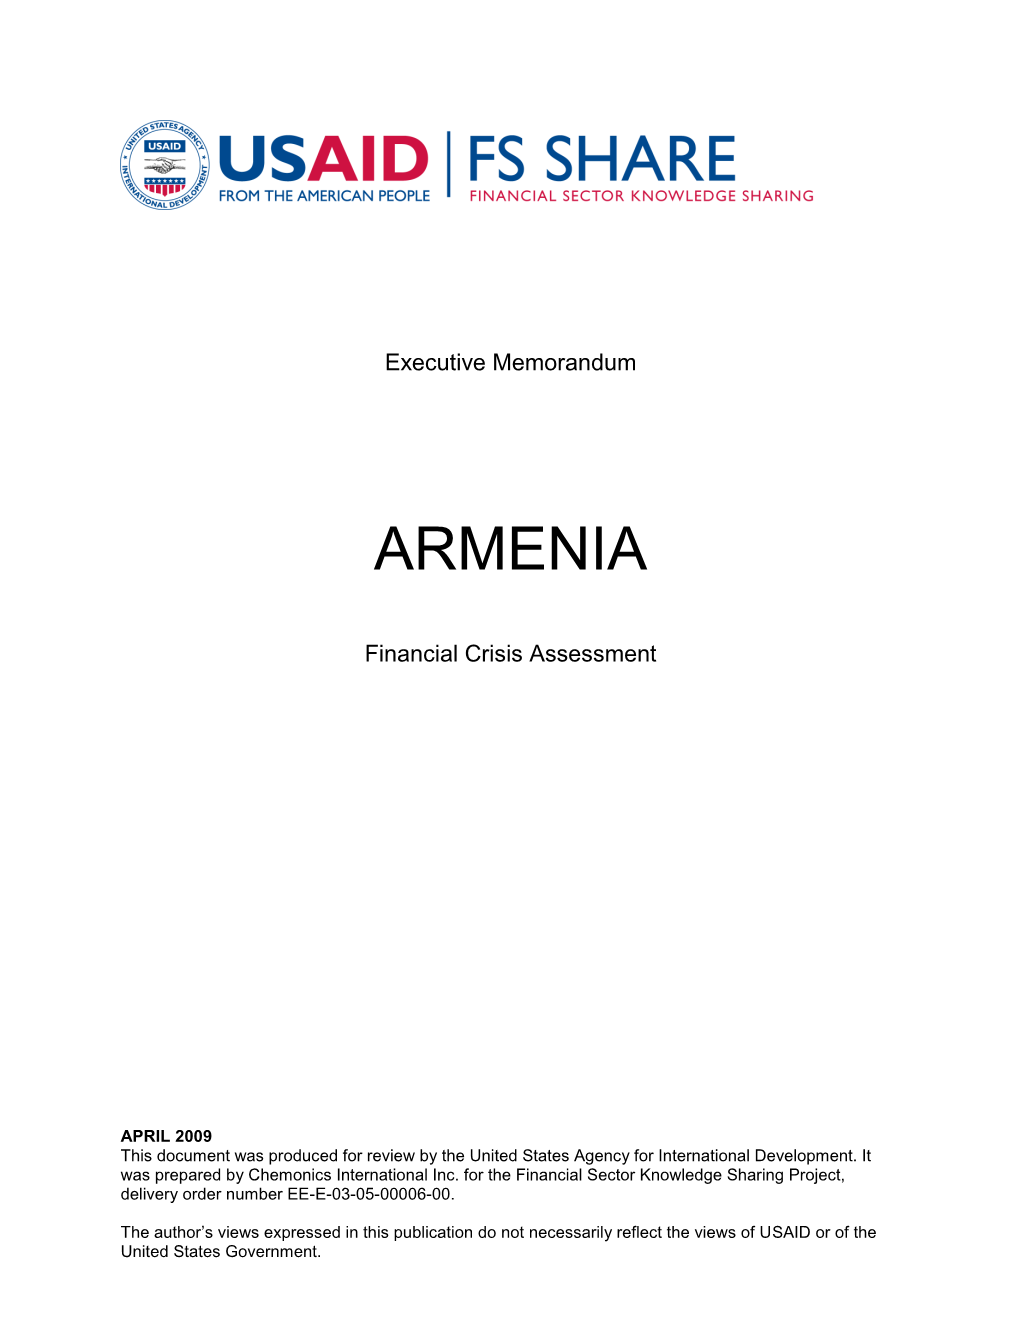 Applied It in Armenia